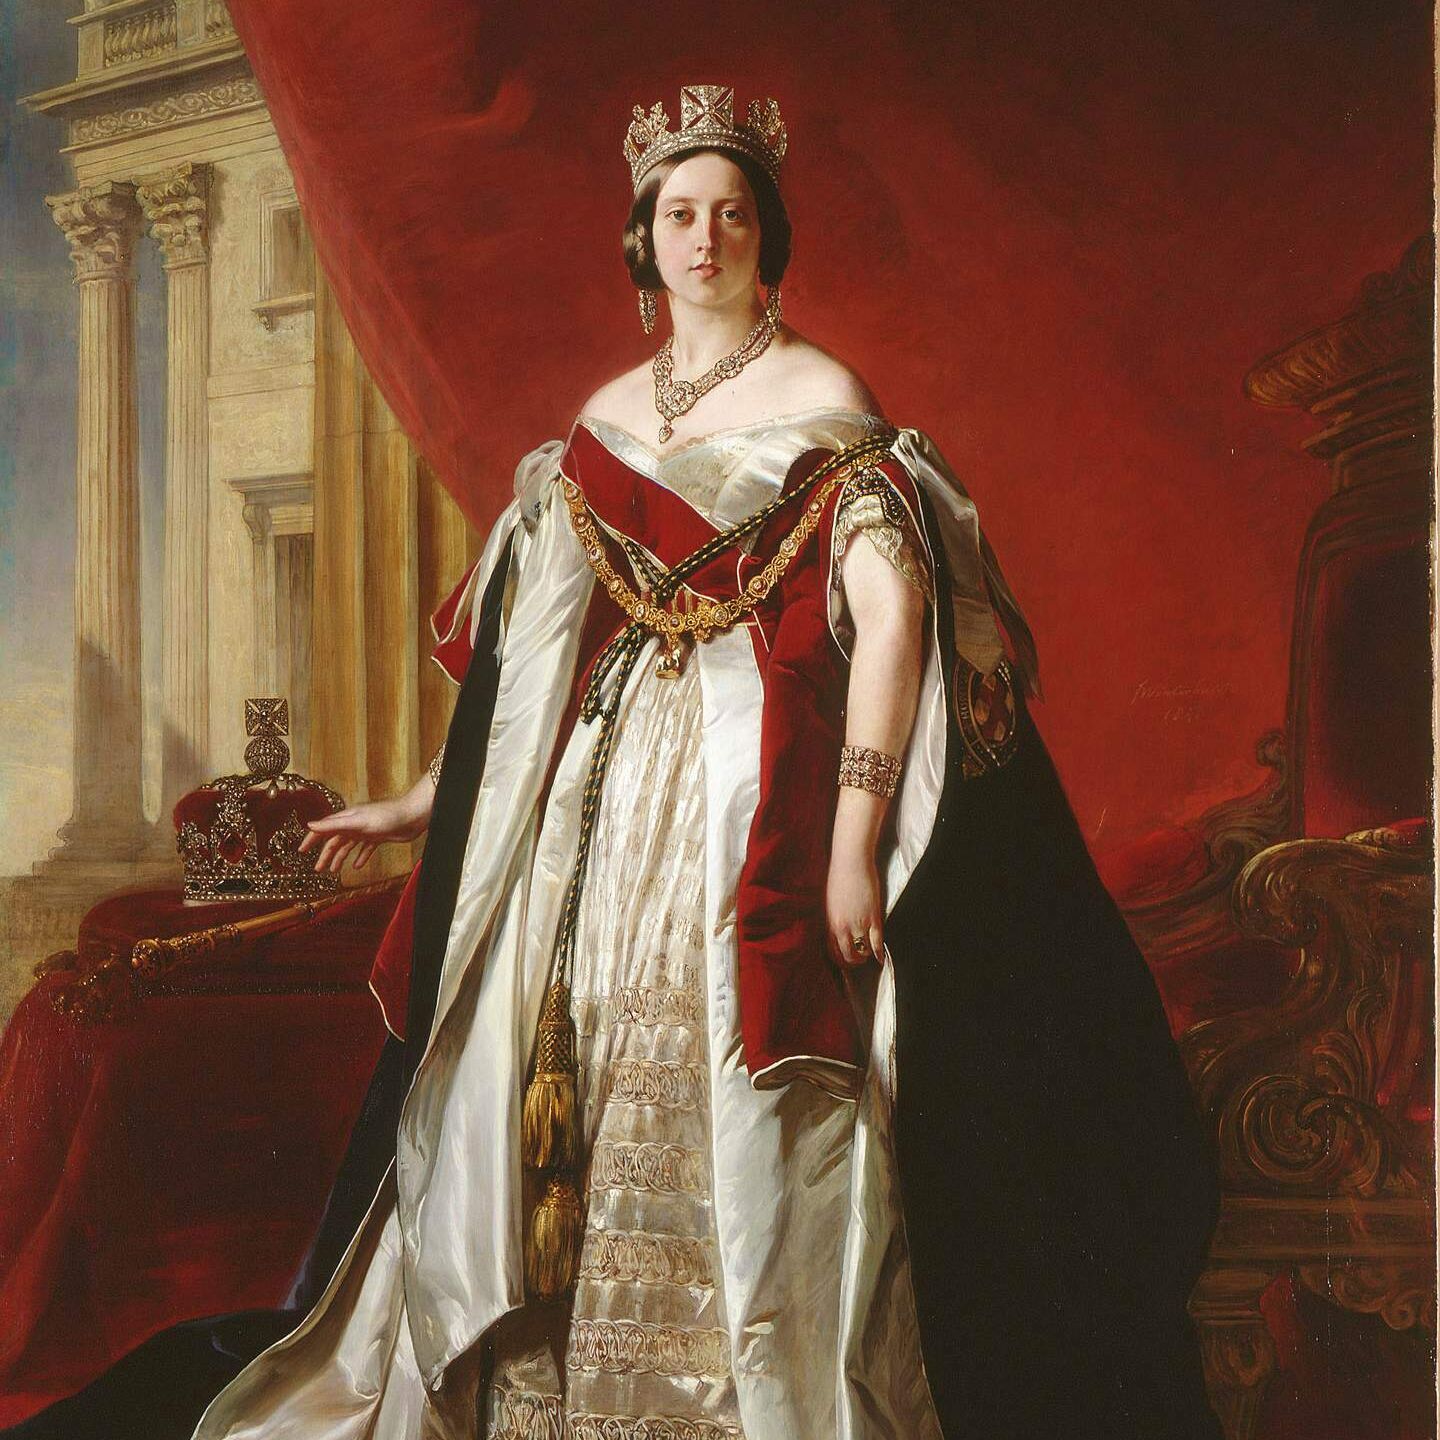 Portrait of Queen Victoria (1819-1901), 1843